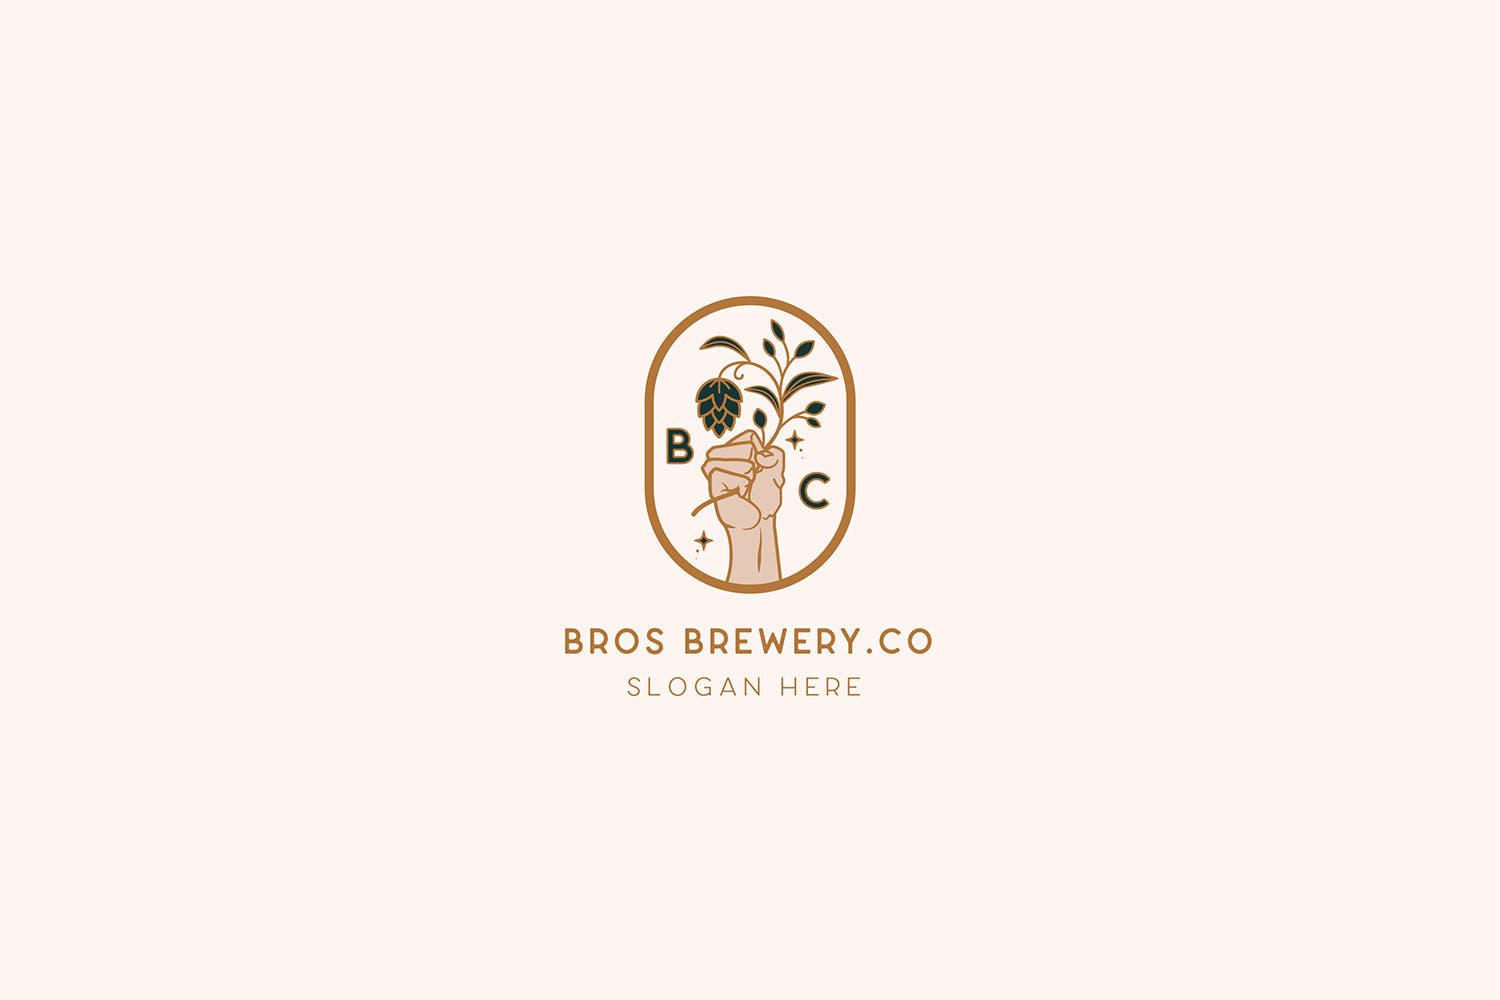 咖啡/啤酒品牌Logo设计16图库精选模板 Brewery Brotherhood cafe beer Logo Template插图(1)